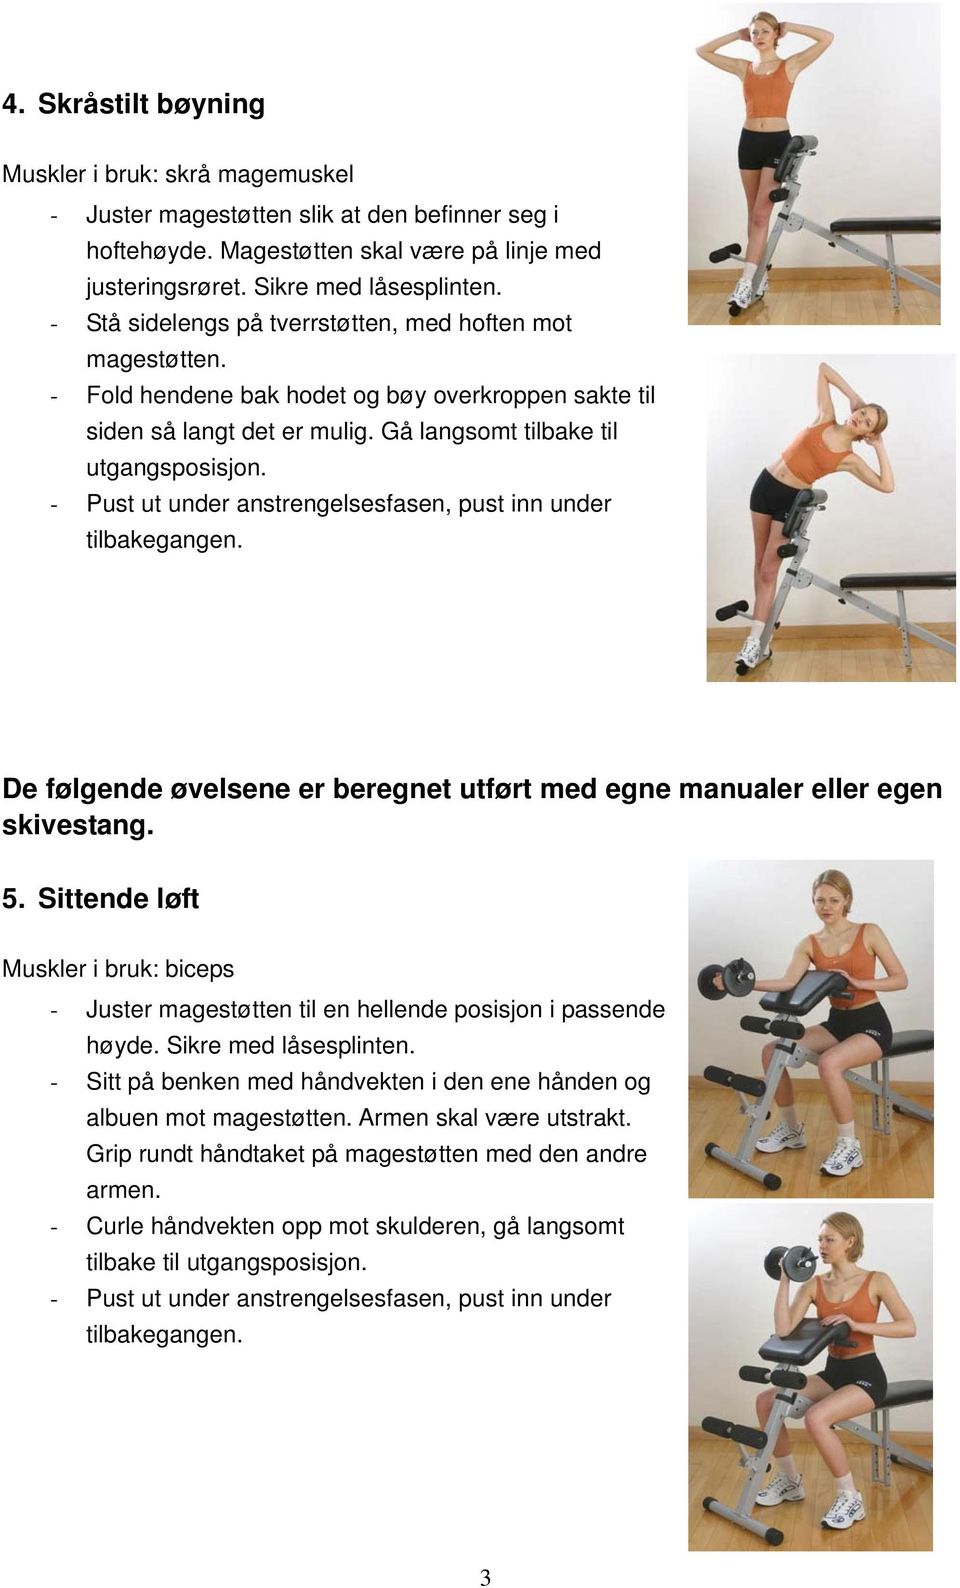 De følgende øvelsene er beregnet utført med egne manualer eller egen skivestang. 5. Sittende løft Muskler i bruk: biceps - Juster magestøtten til en hellende posisjon i passende høyde.